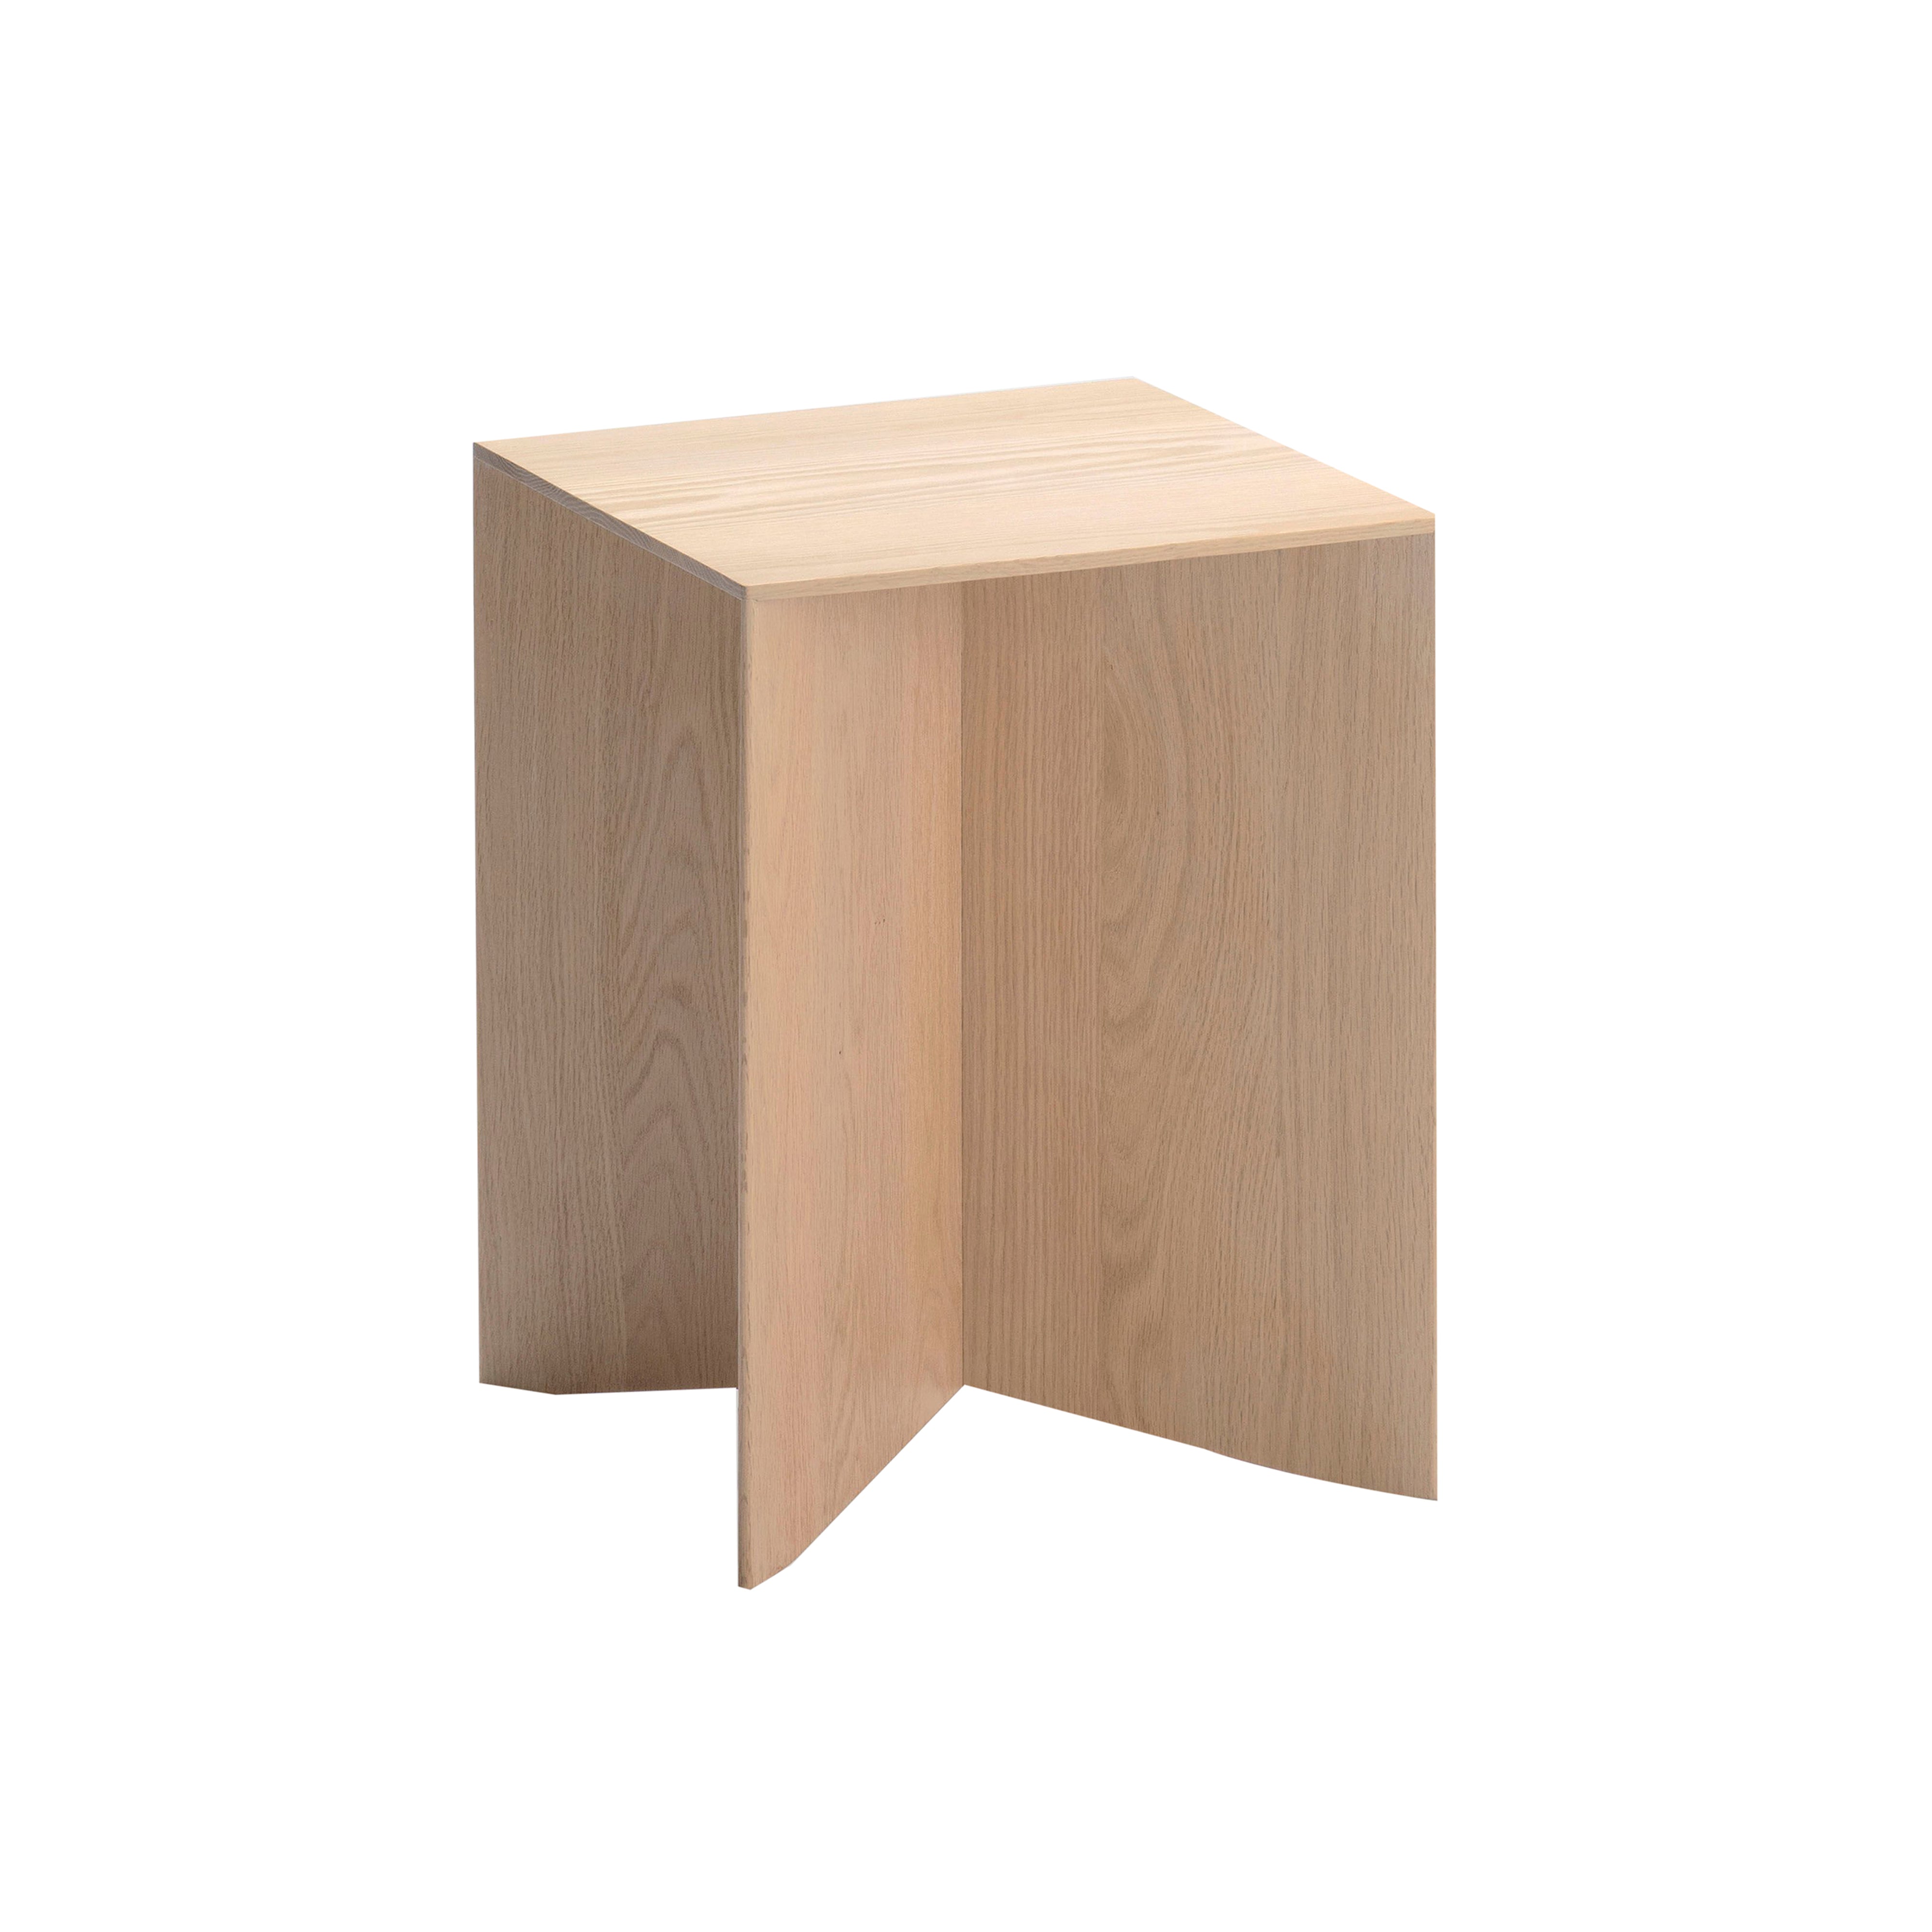 Paperwood Side Table: White Oak